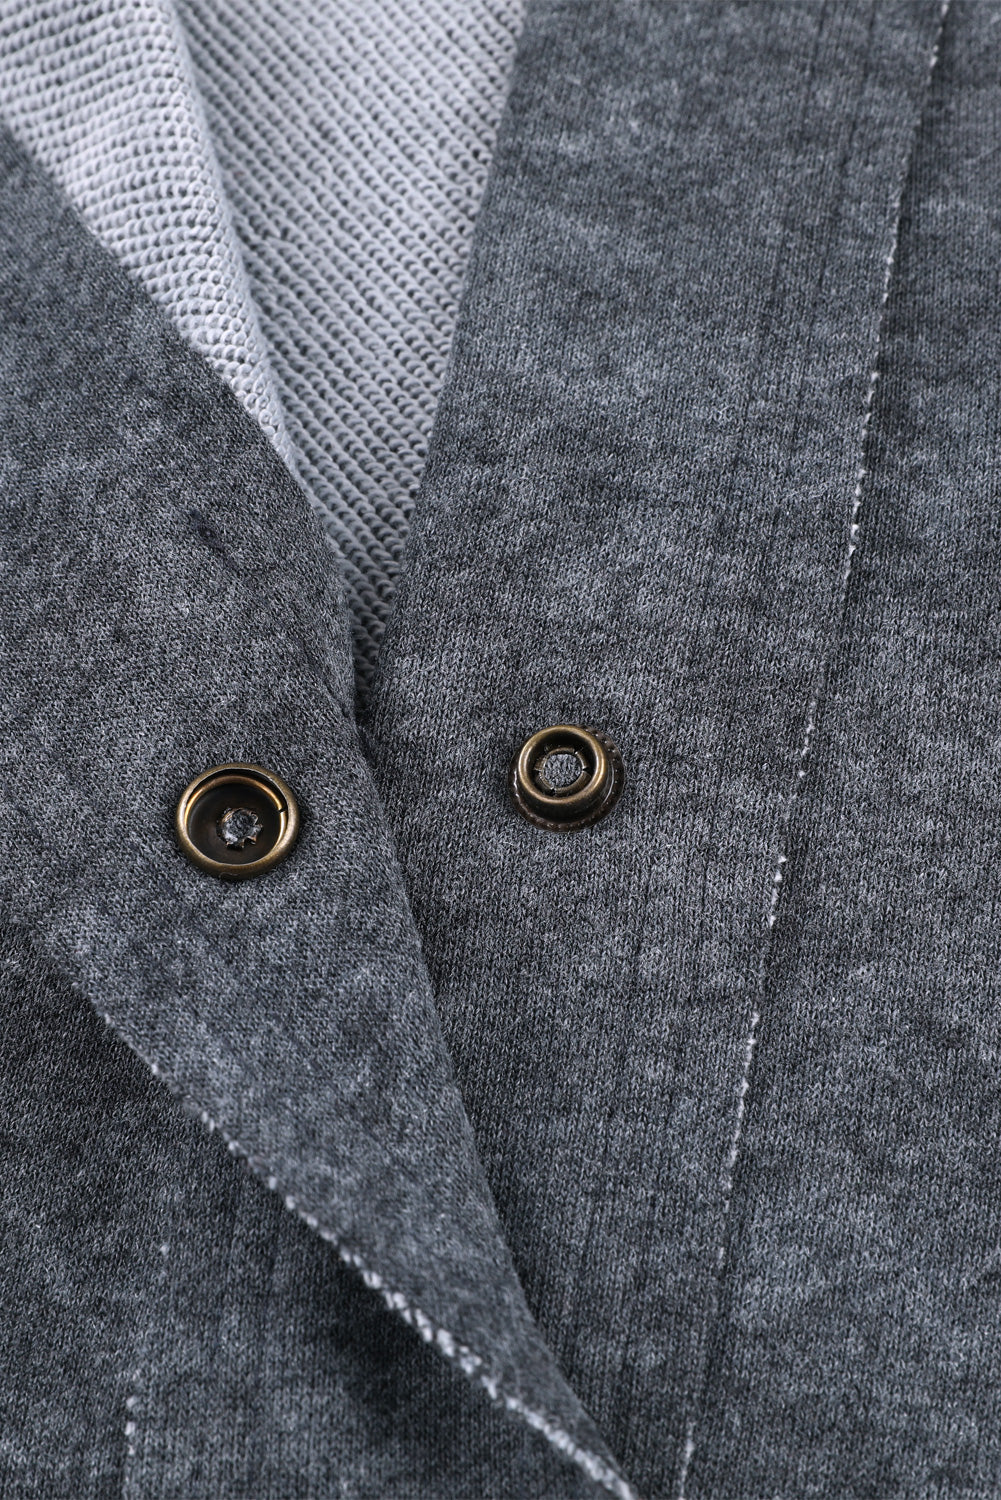 Veste boutonnée grise vintage délavée avec poche à rabat